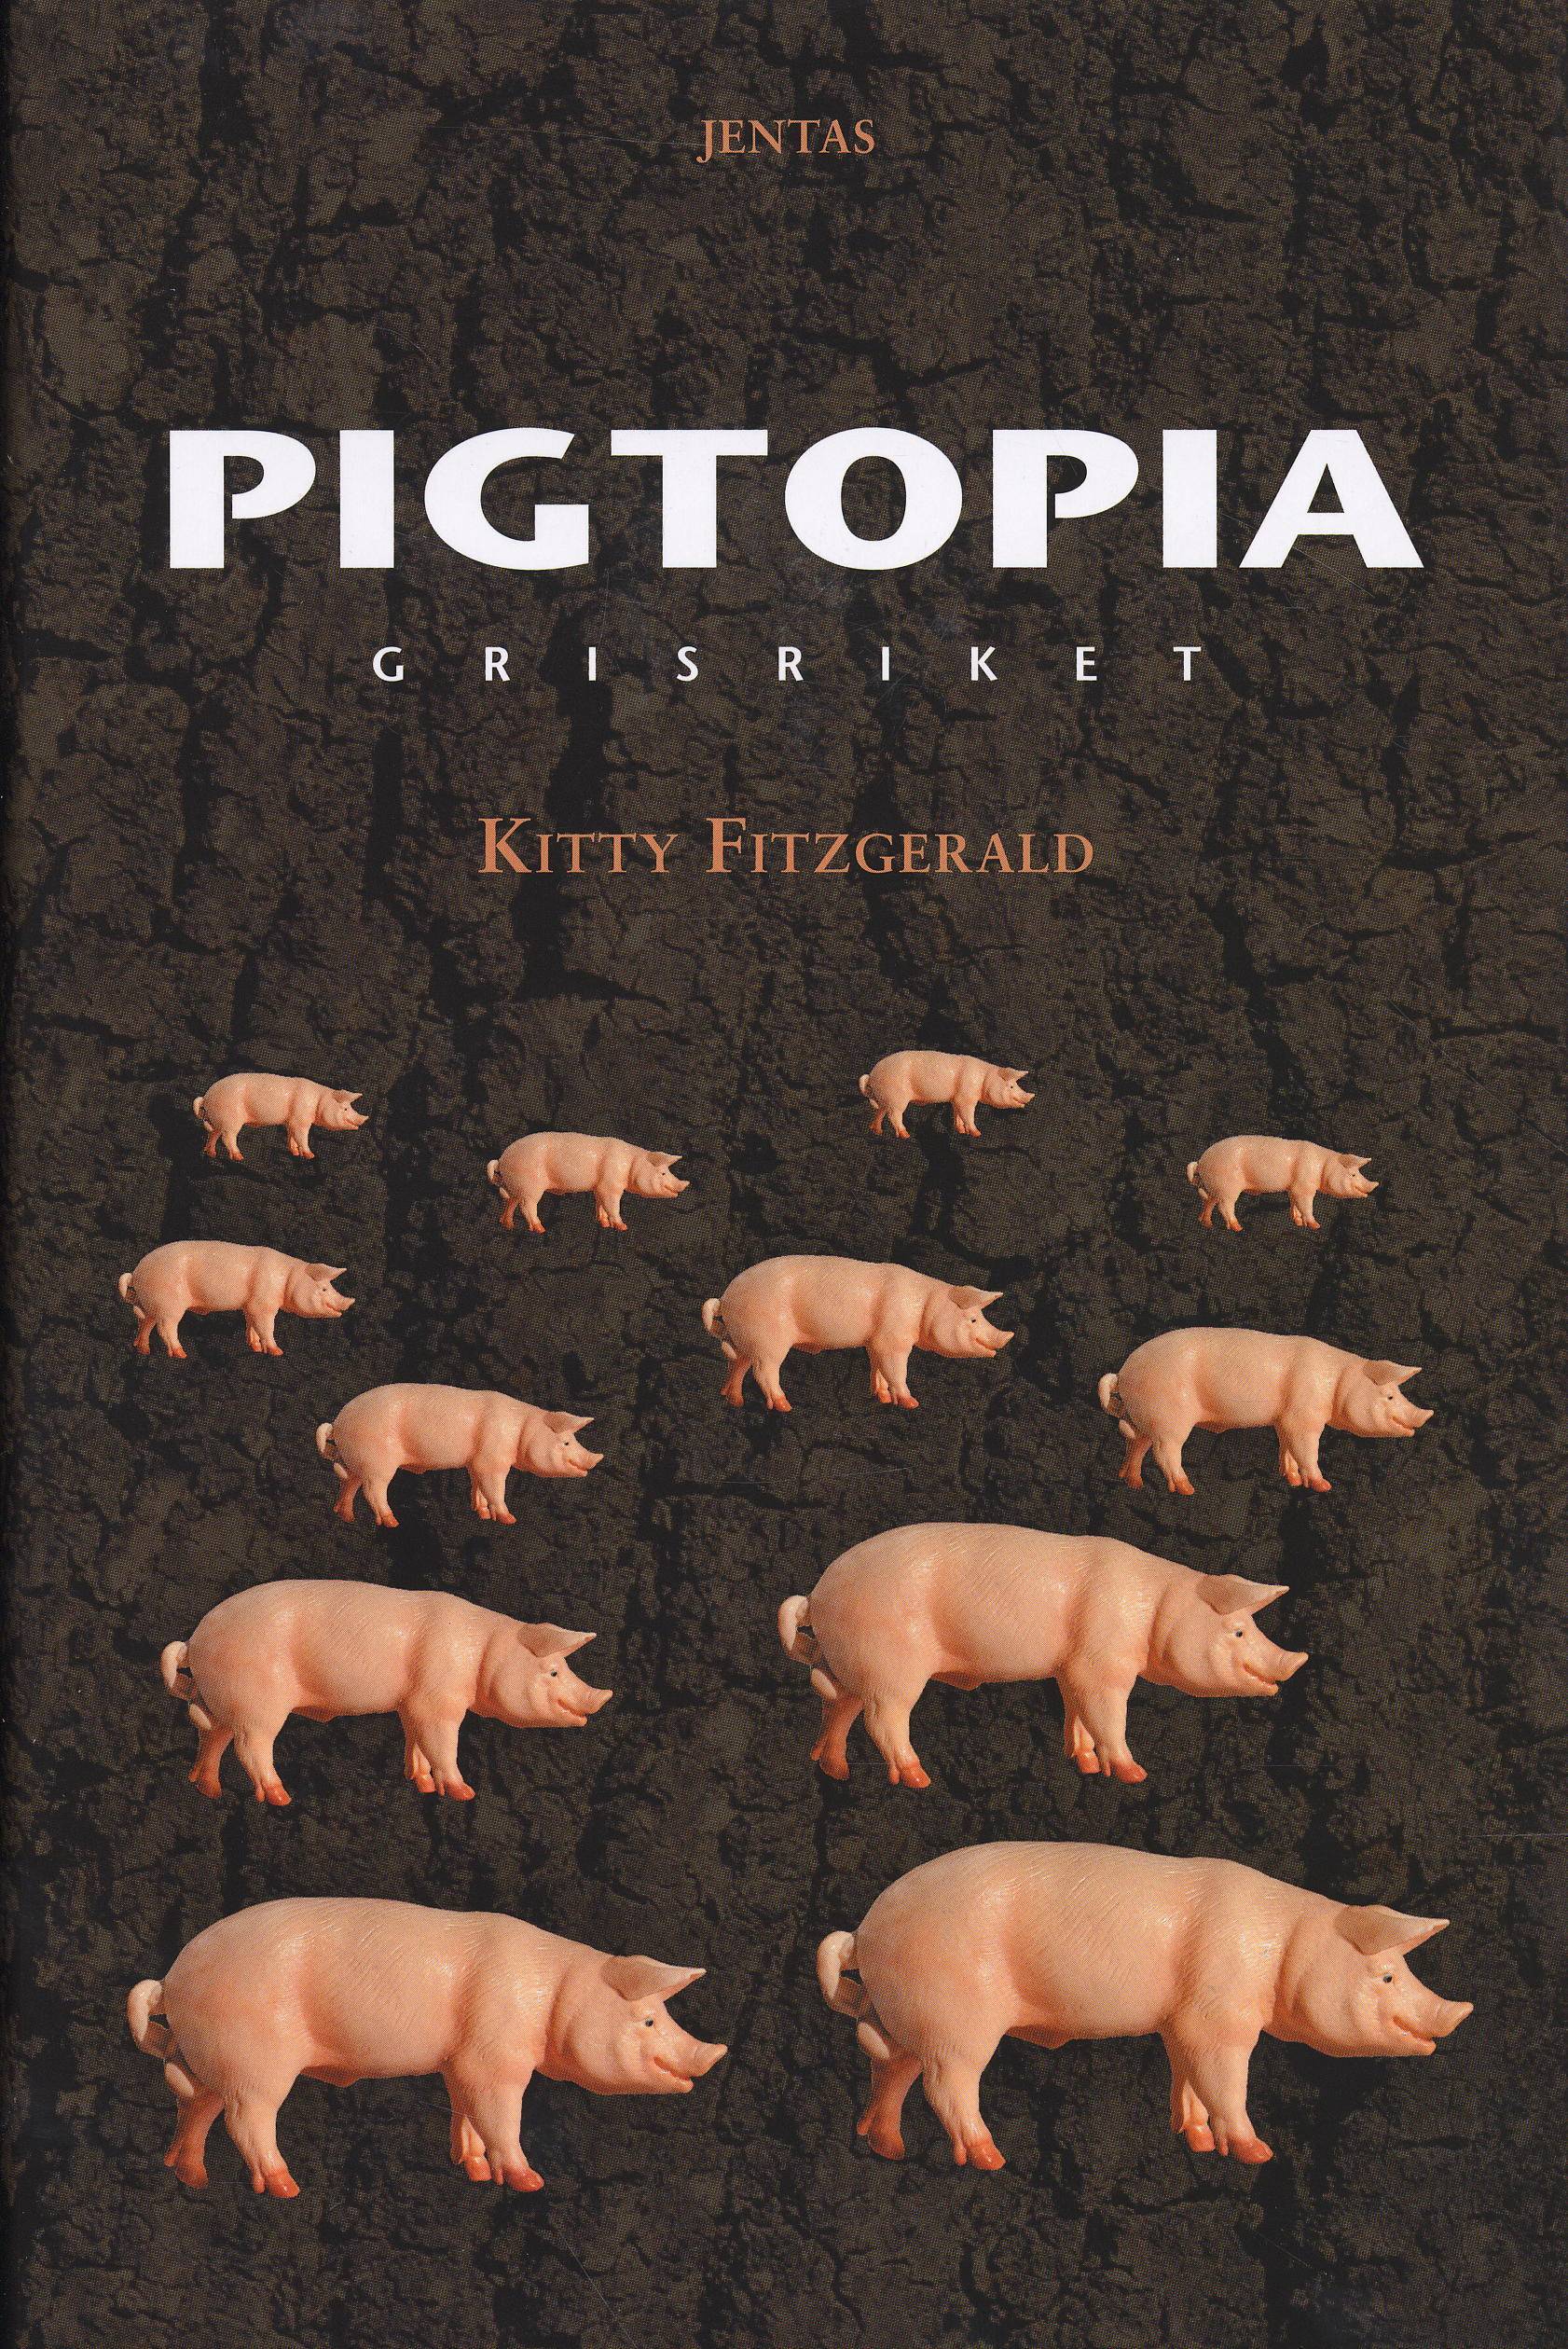 Pigtopia